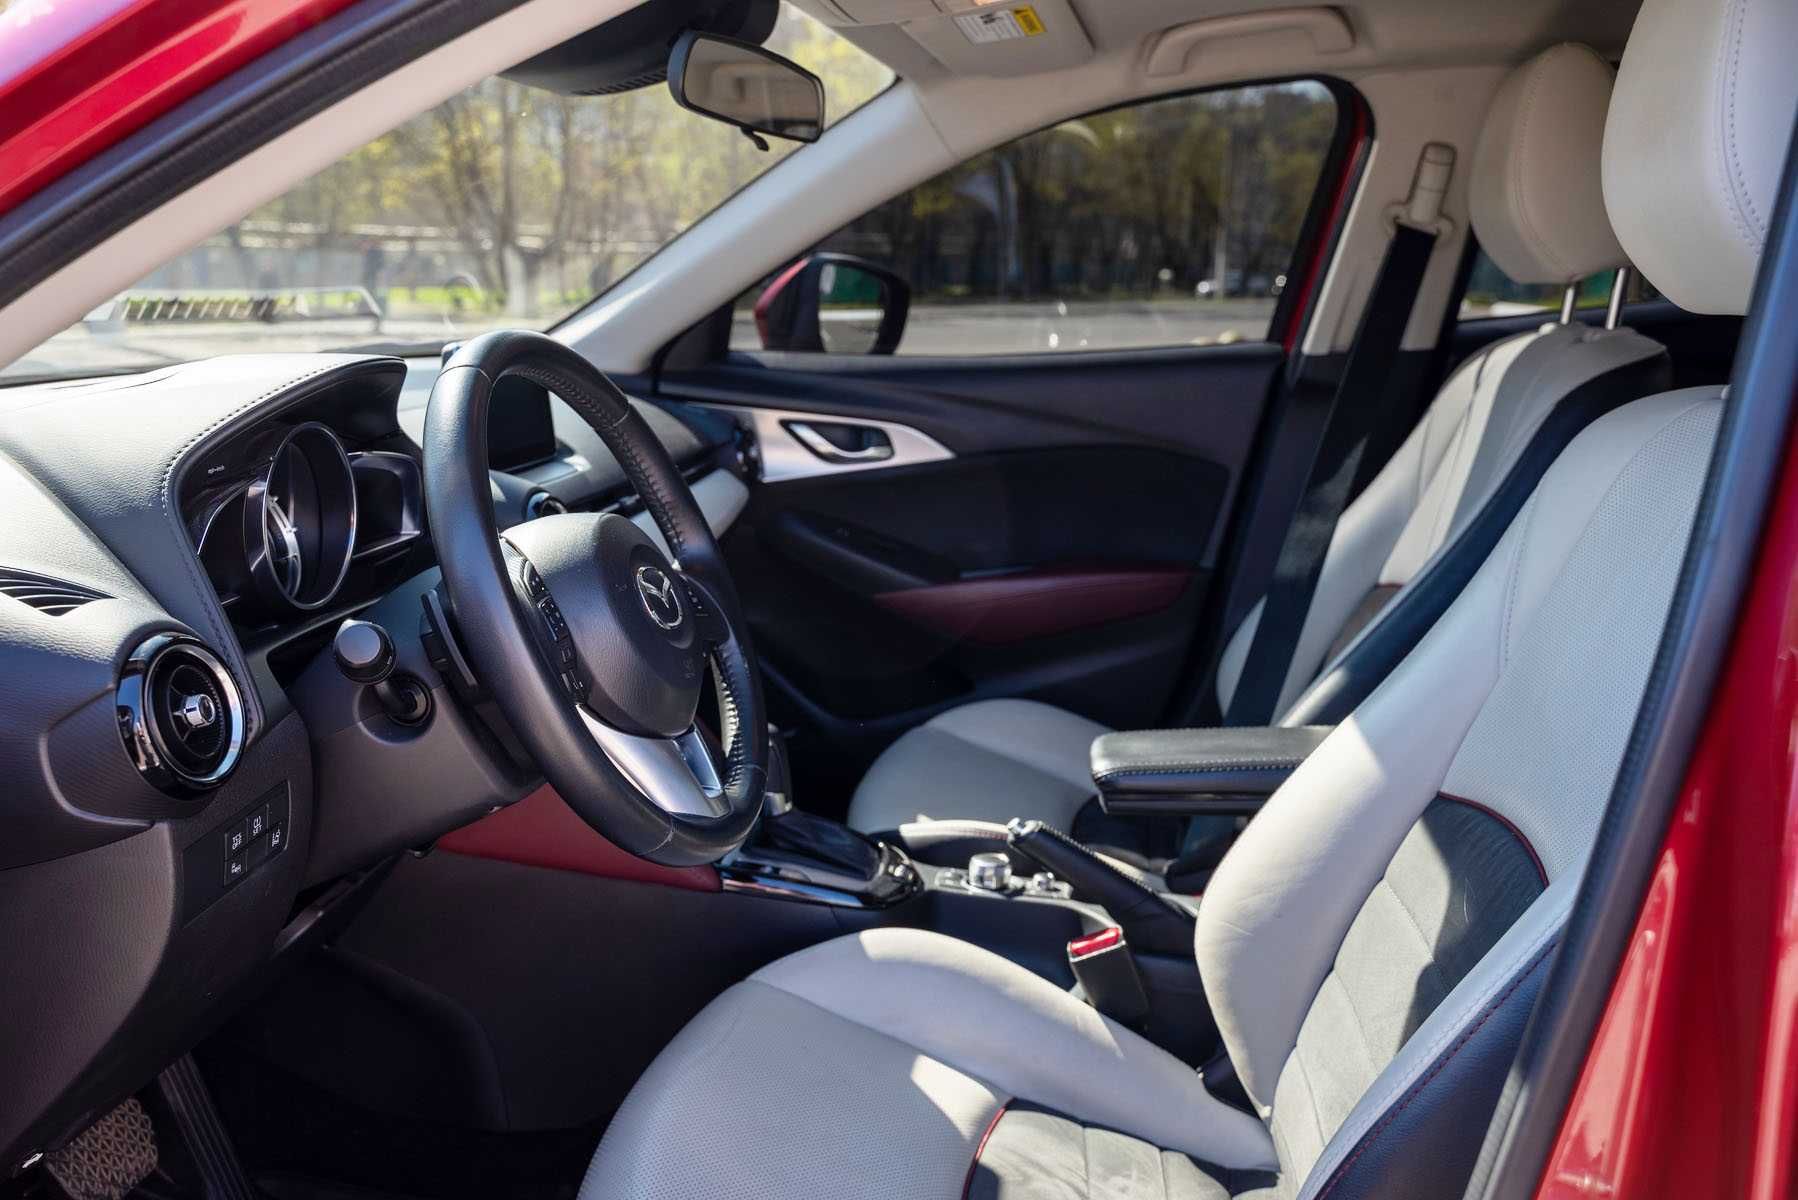 Mazda CX-3 AWD 2.0 на коже с люком (2015 г.в.)